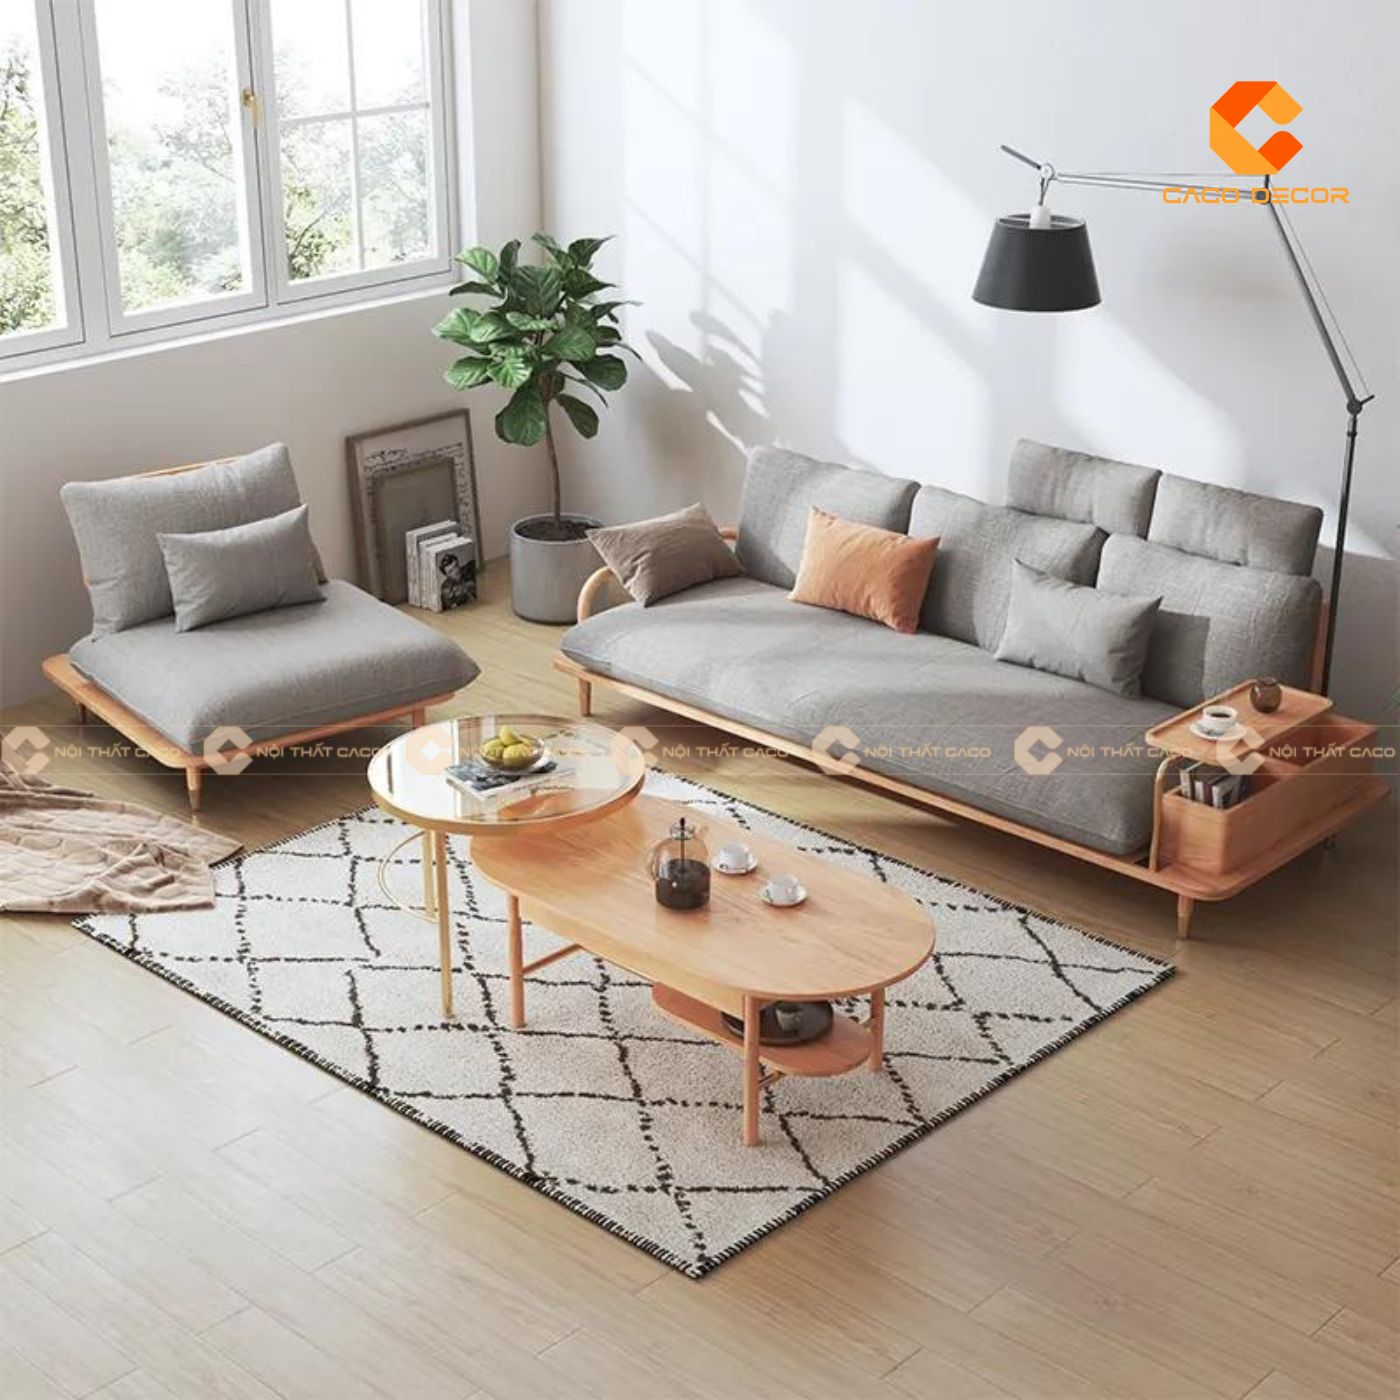 Sofa gỗ hiện đại lựa chọn hoàn hảo cho phòng khách chung cư 7